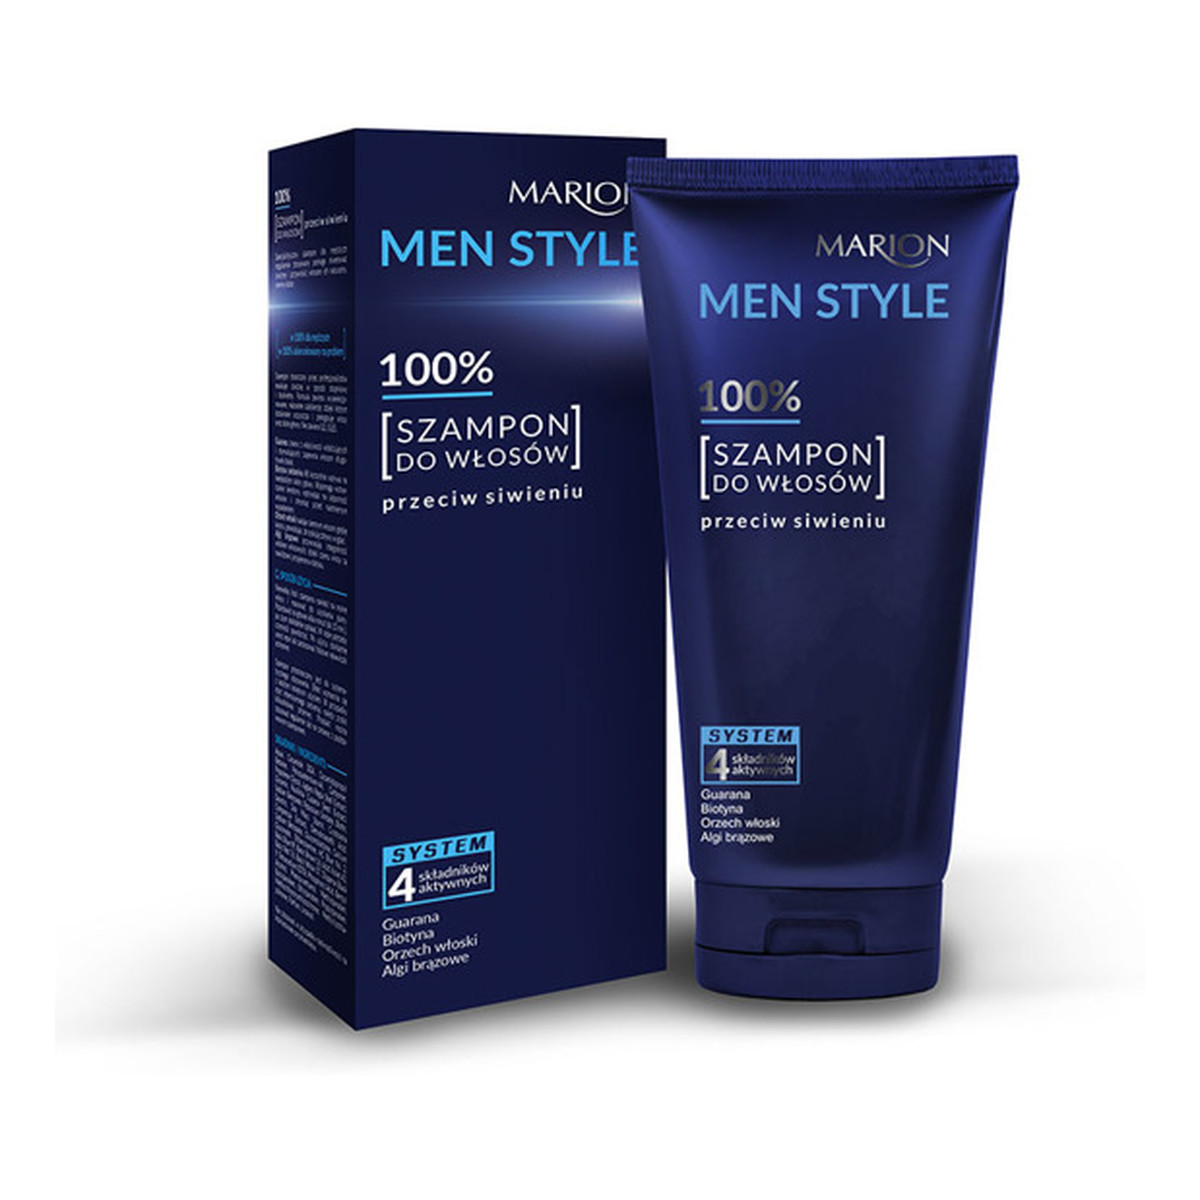 Marion Men Style 100% szampon do włosów przeciw siwieniu 150ml